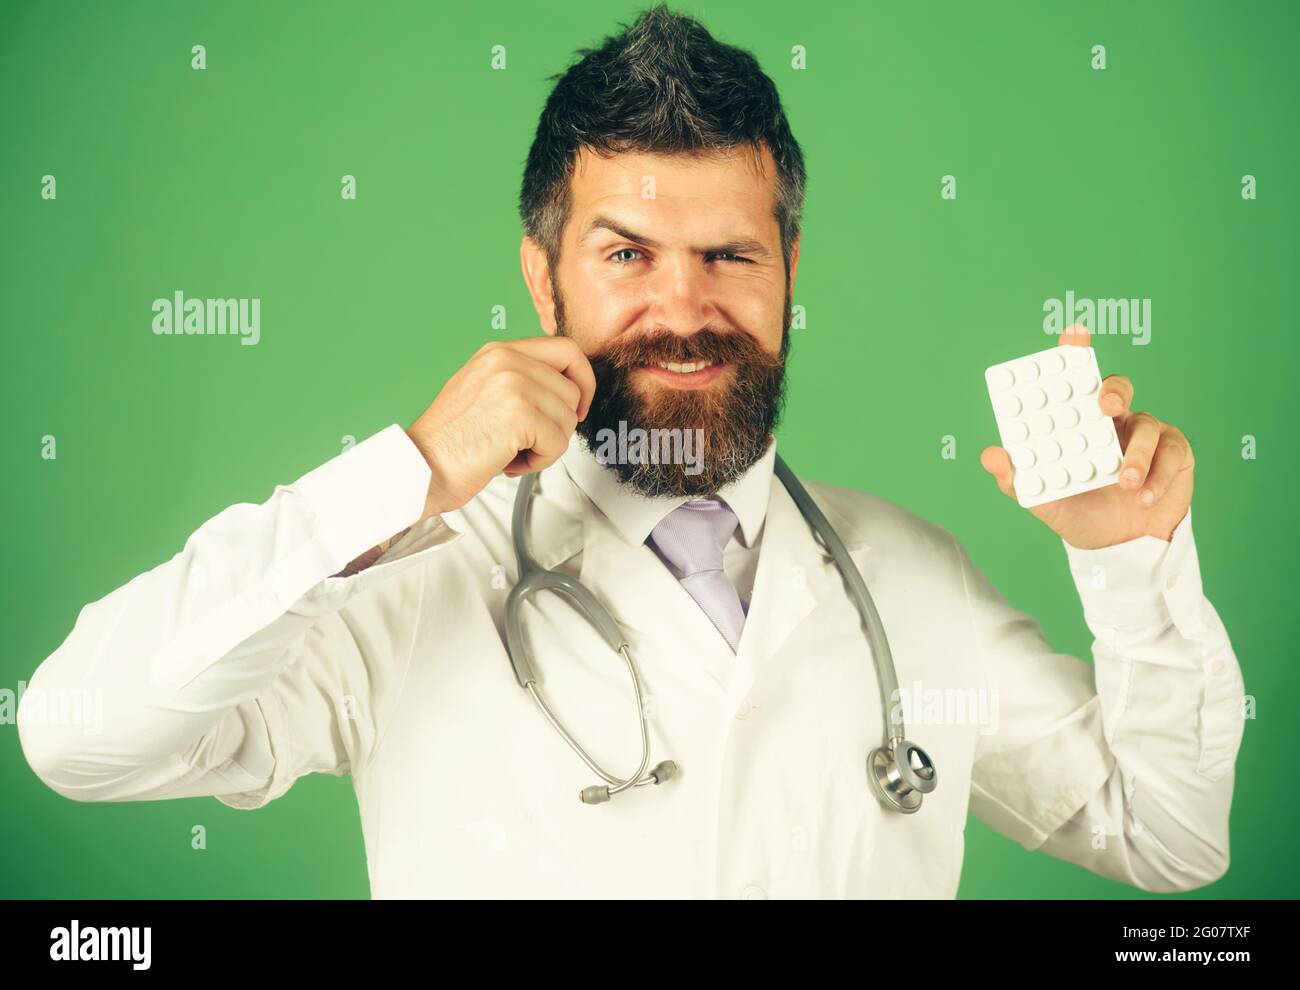 Trattamento e assistenza sanitaria. Sorridente medico o infermiere maschile con stetoscopio con pillole in mano. Foto Stock